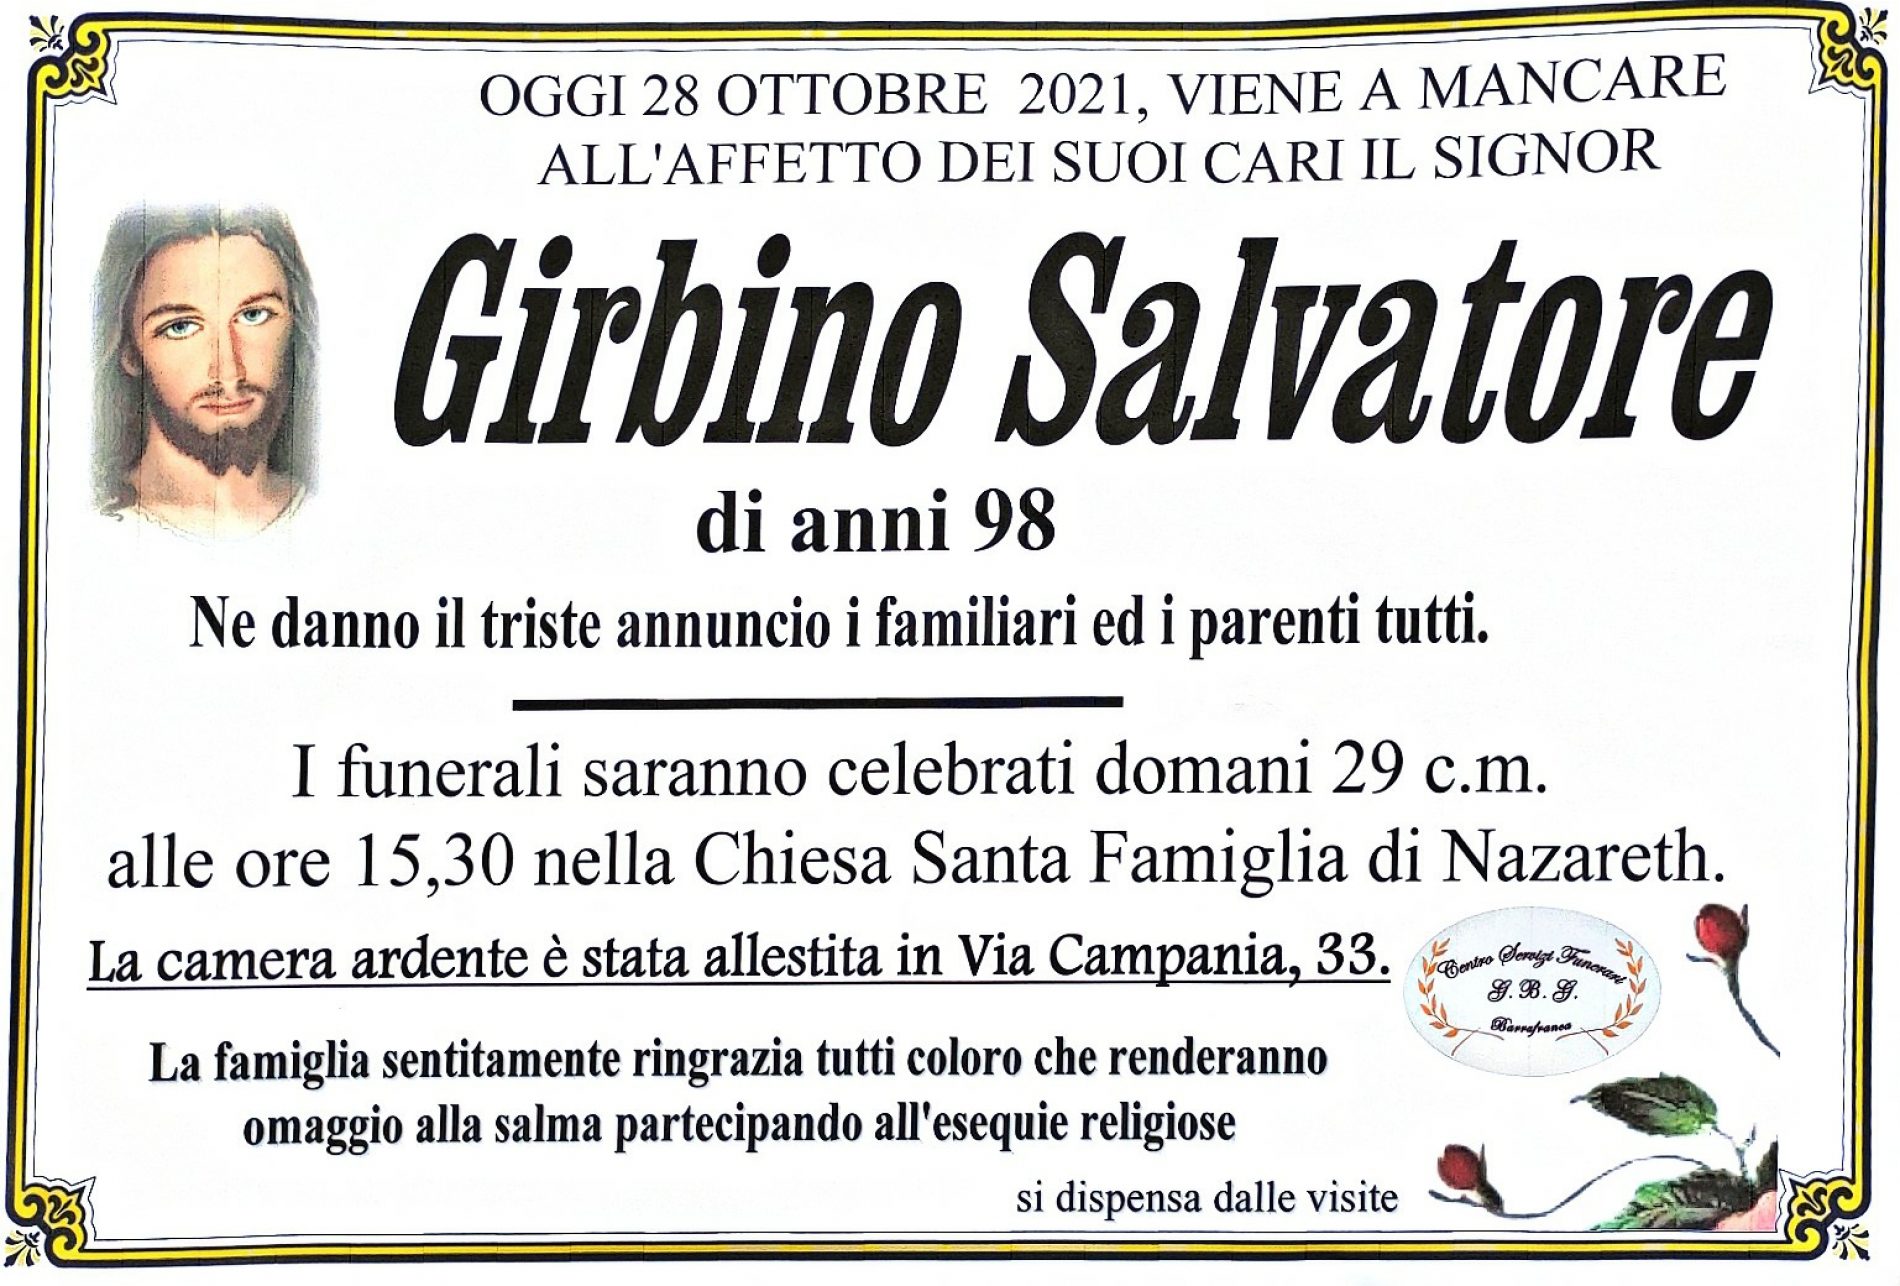 Annuncio servizi funerari agenzia G.B.G. sig. Girbino Salvatore di anni 98